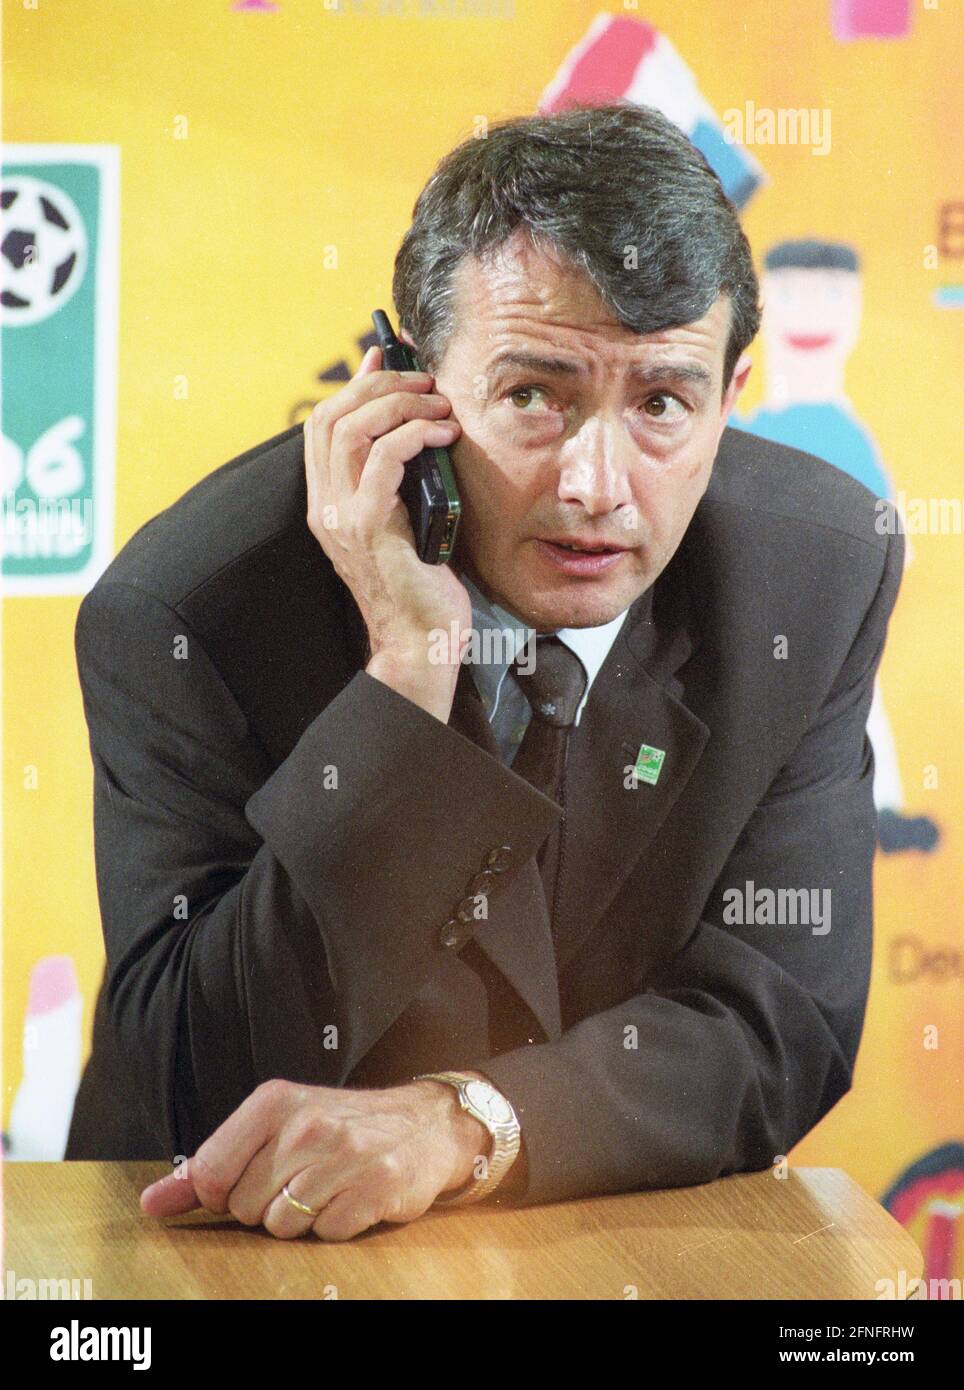 Wolfgang Niersbach su 08.09.1999 al match Germania-Irlanda del Nord 4:0 In Dortmund parlare su un telefono cellulare [traduzione automatica] Foto Stock